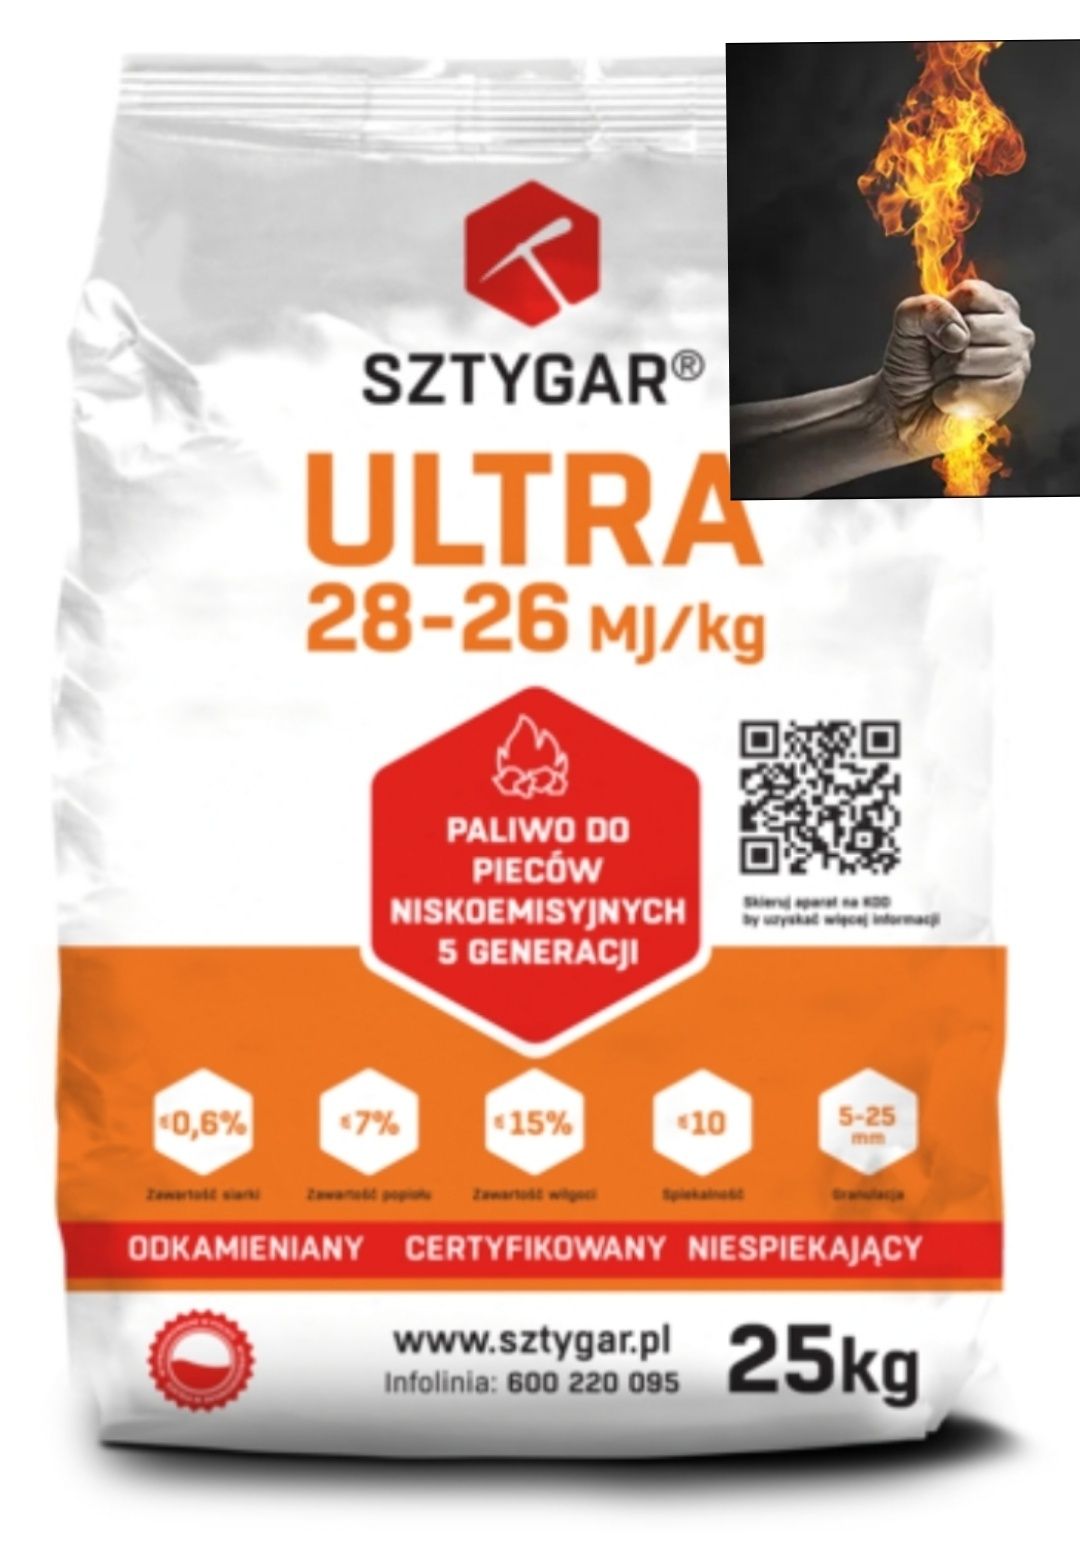 Promocja Węgiel ekogroszek groszek plus Sztygar Ultra 28-26